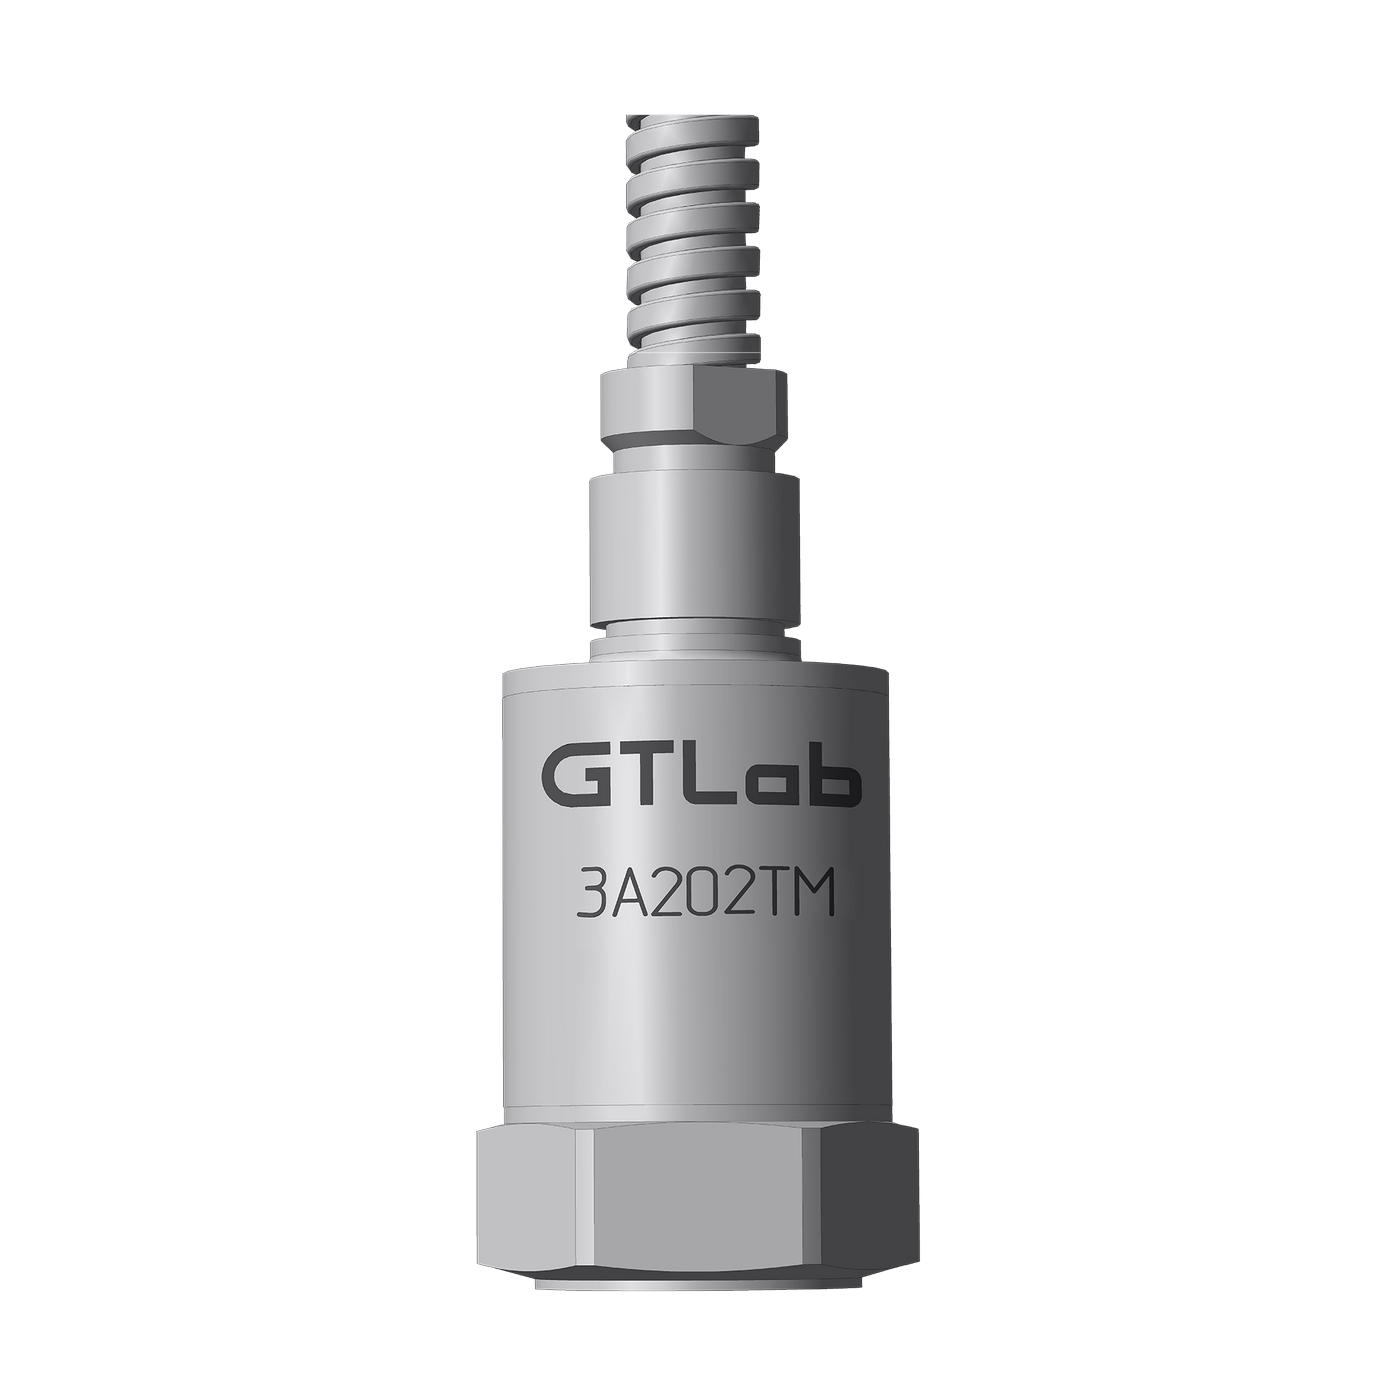 Датчик виброперемещения с токовым выходом промышленный GTLAB 3A202TM-160 Дозиметры